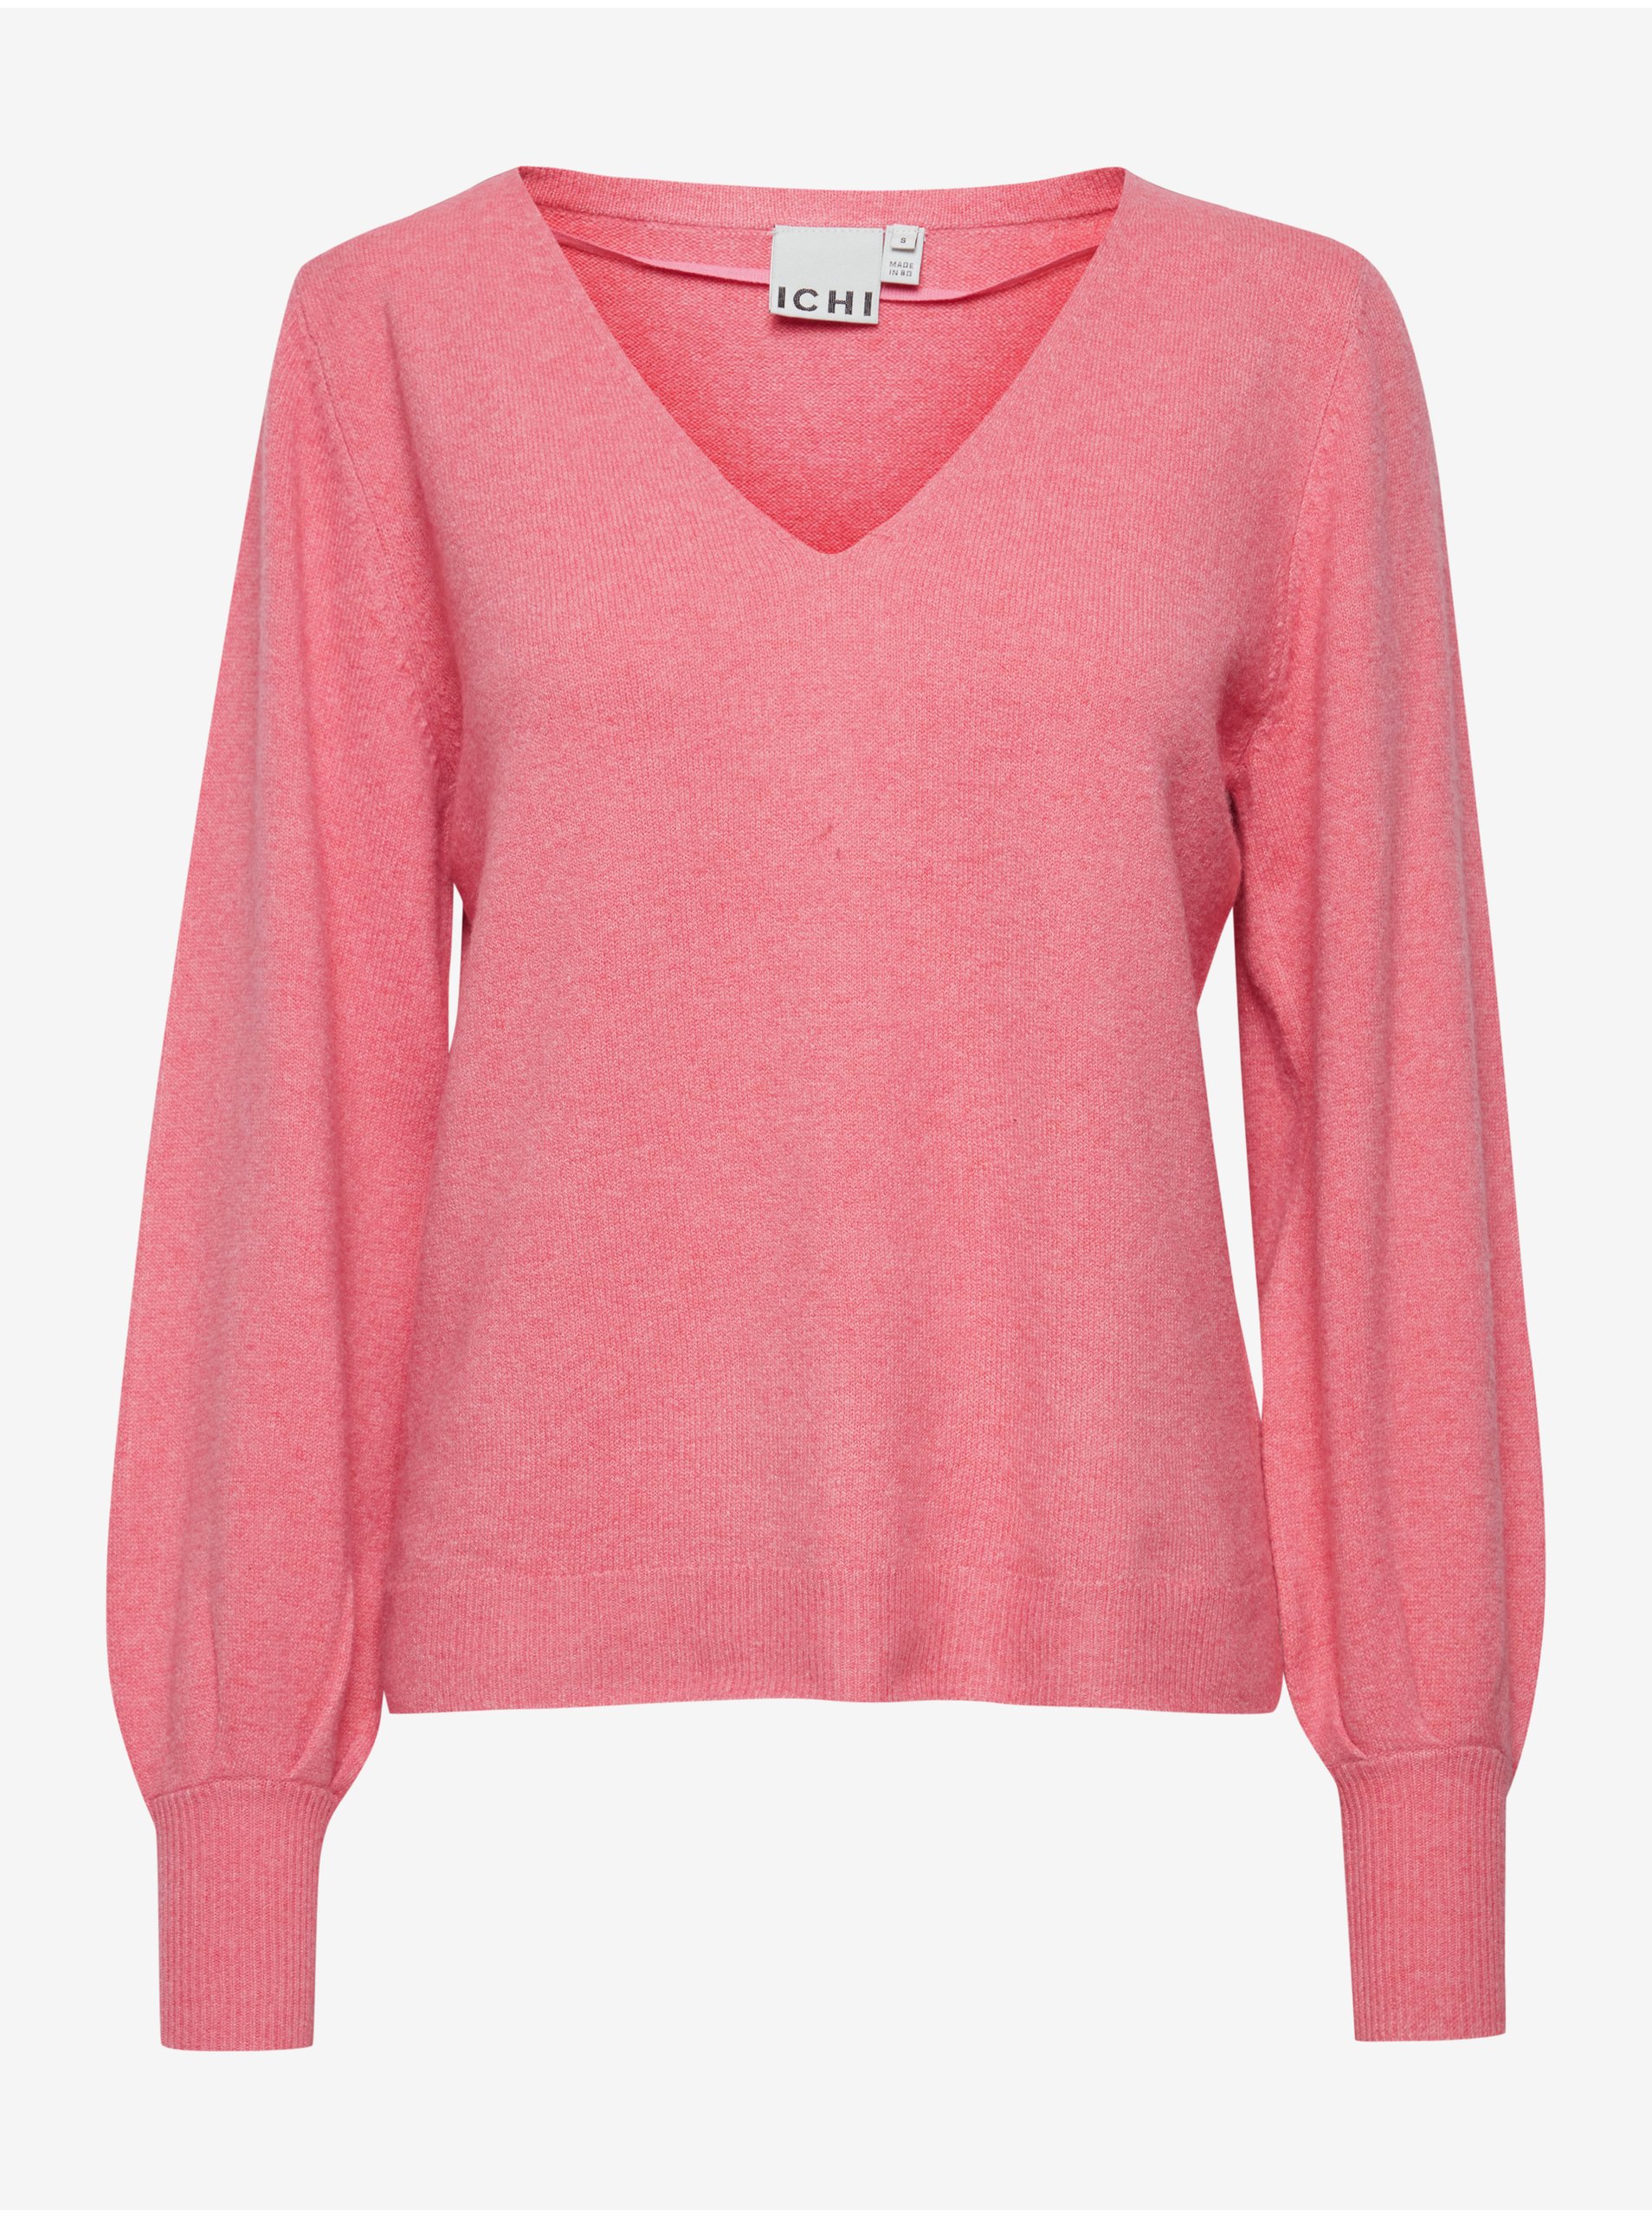 E-shop Růžový dámský lehký svetr s balonovými rukávy ICHI